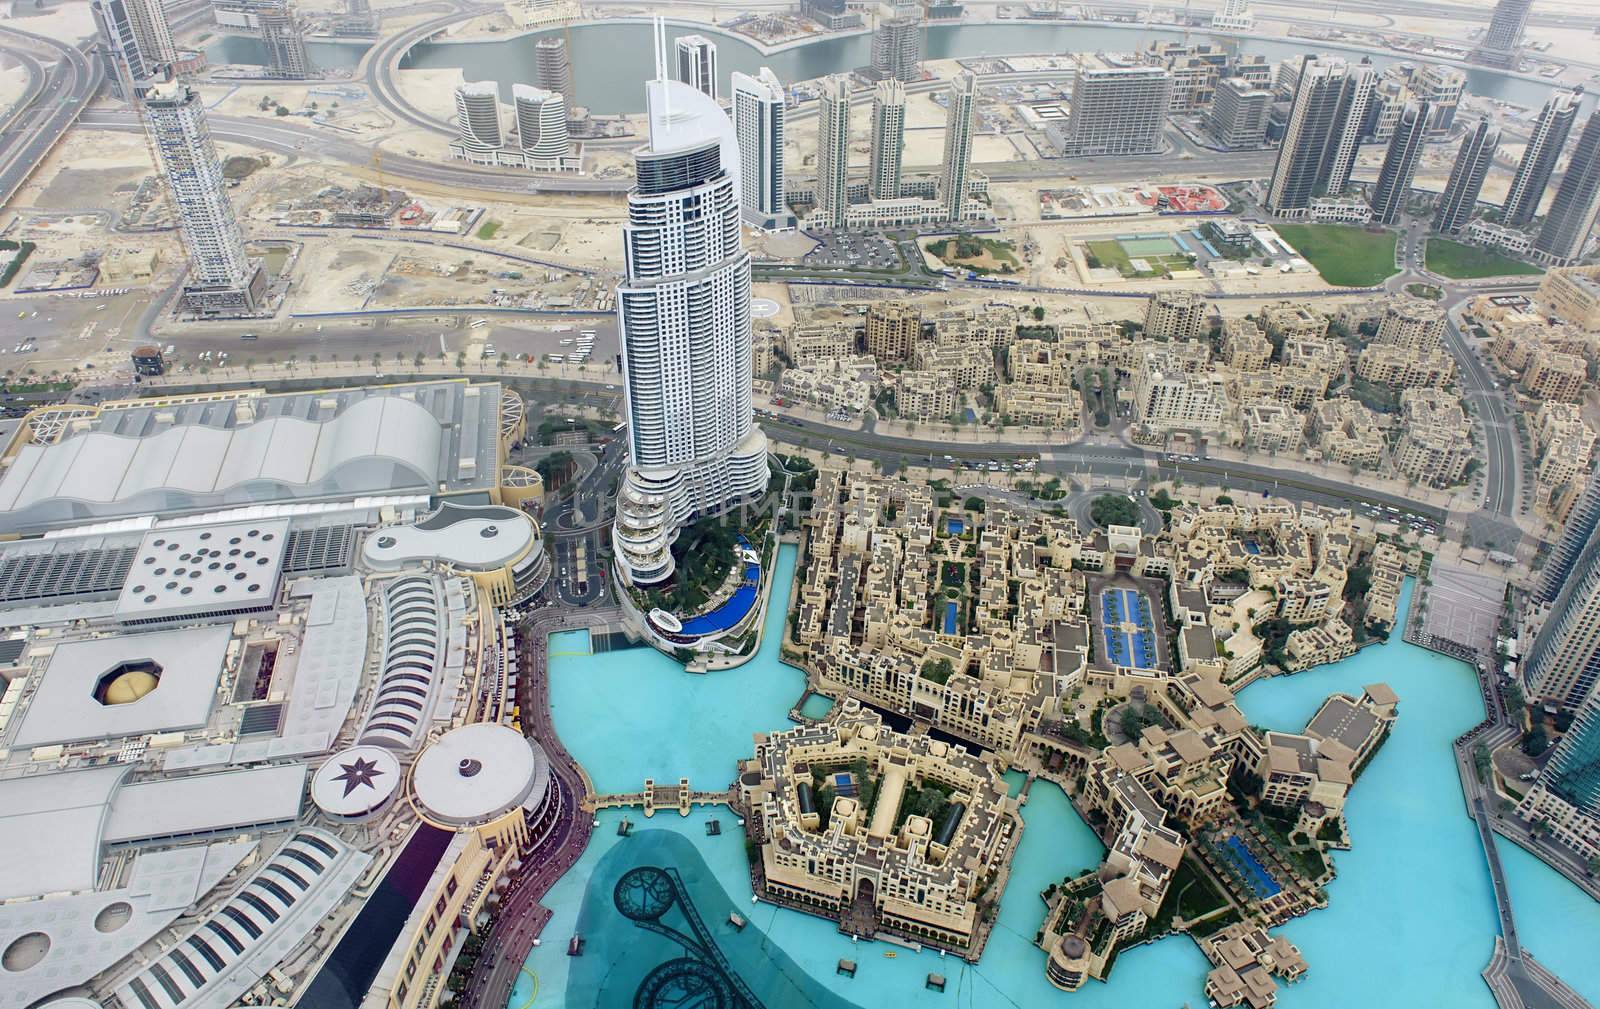 bird's eye view of Dubai urban scene from the Burj Khalifa